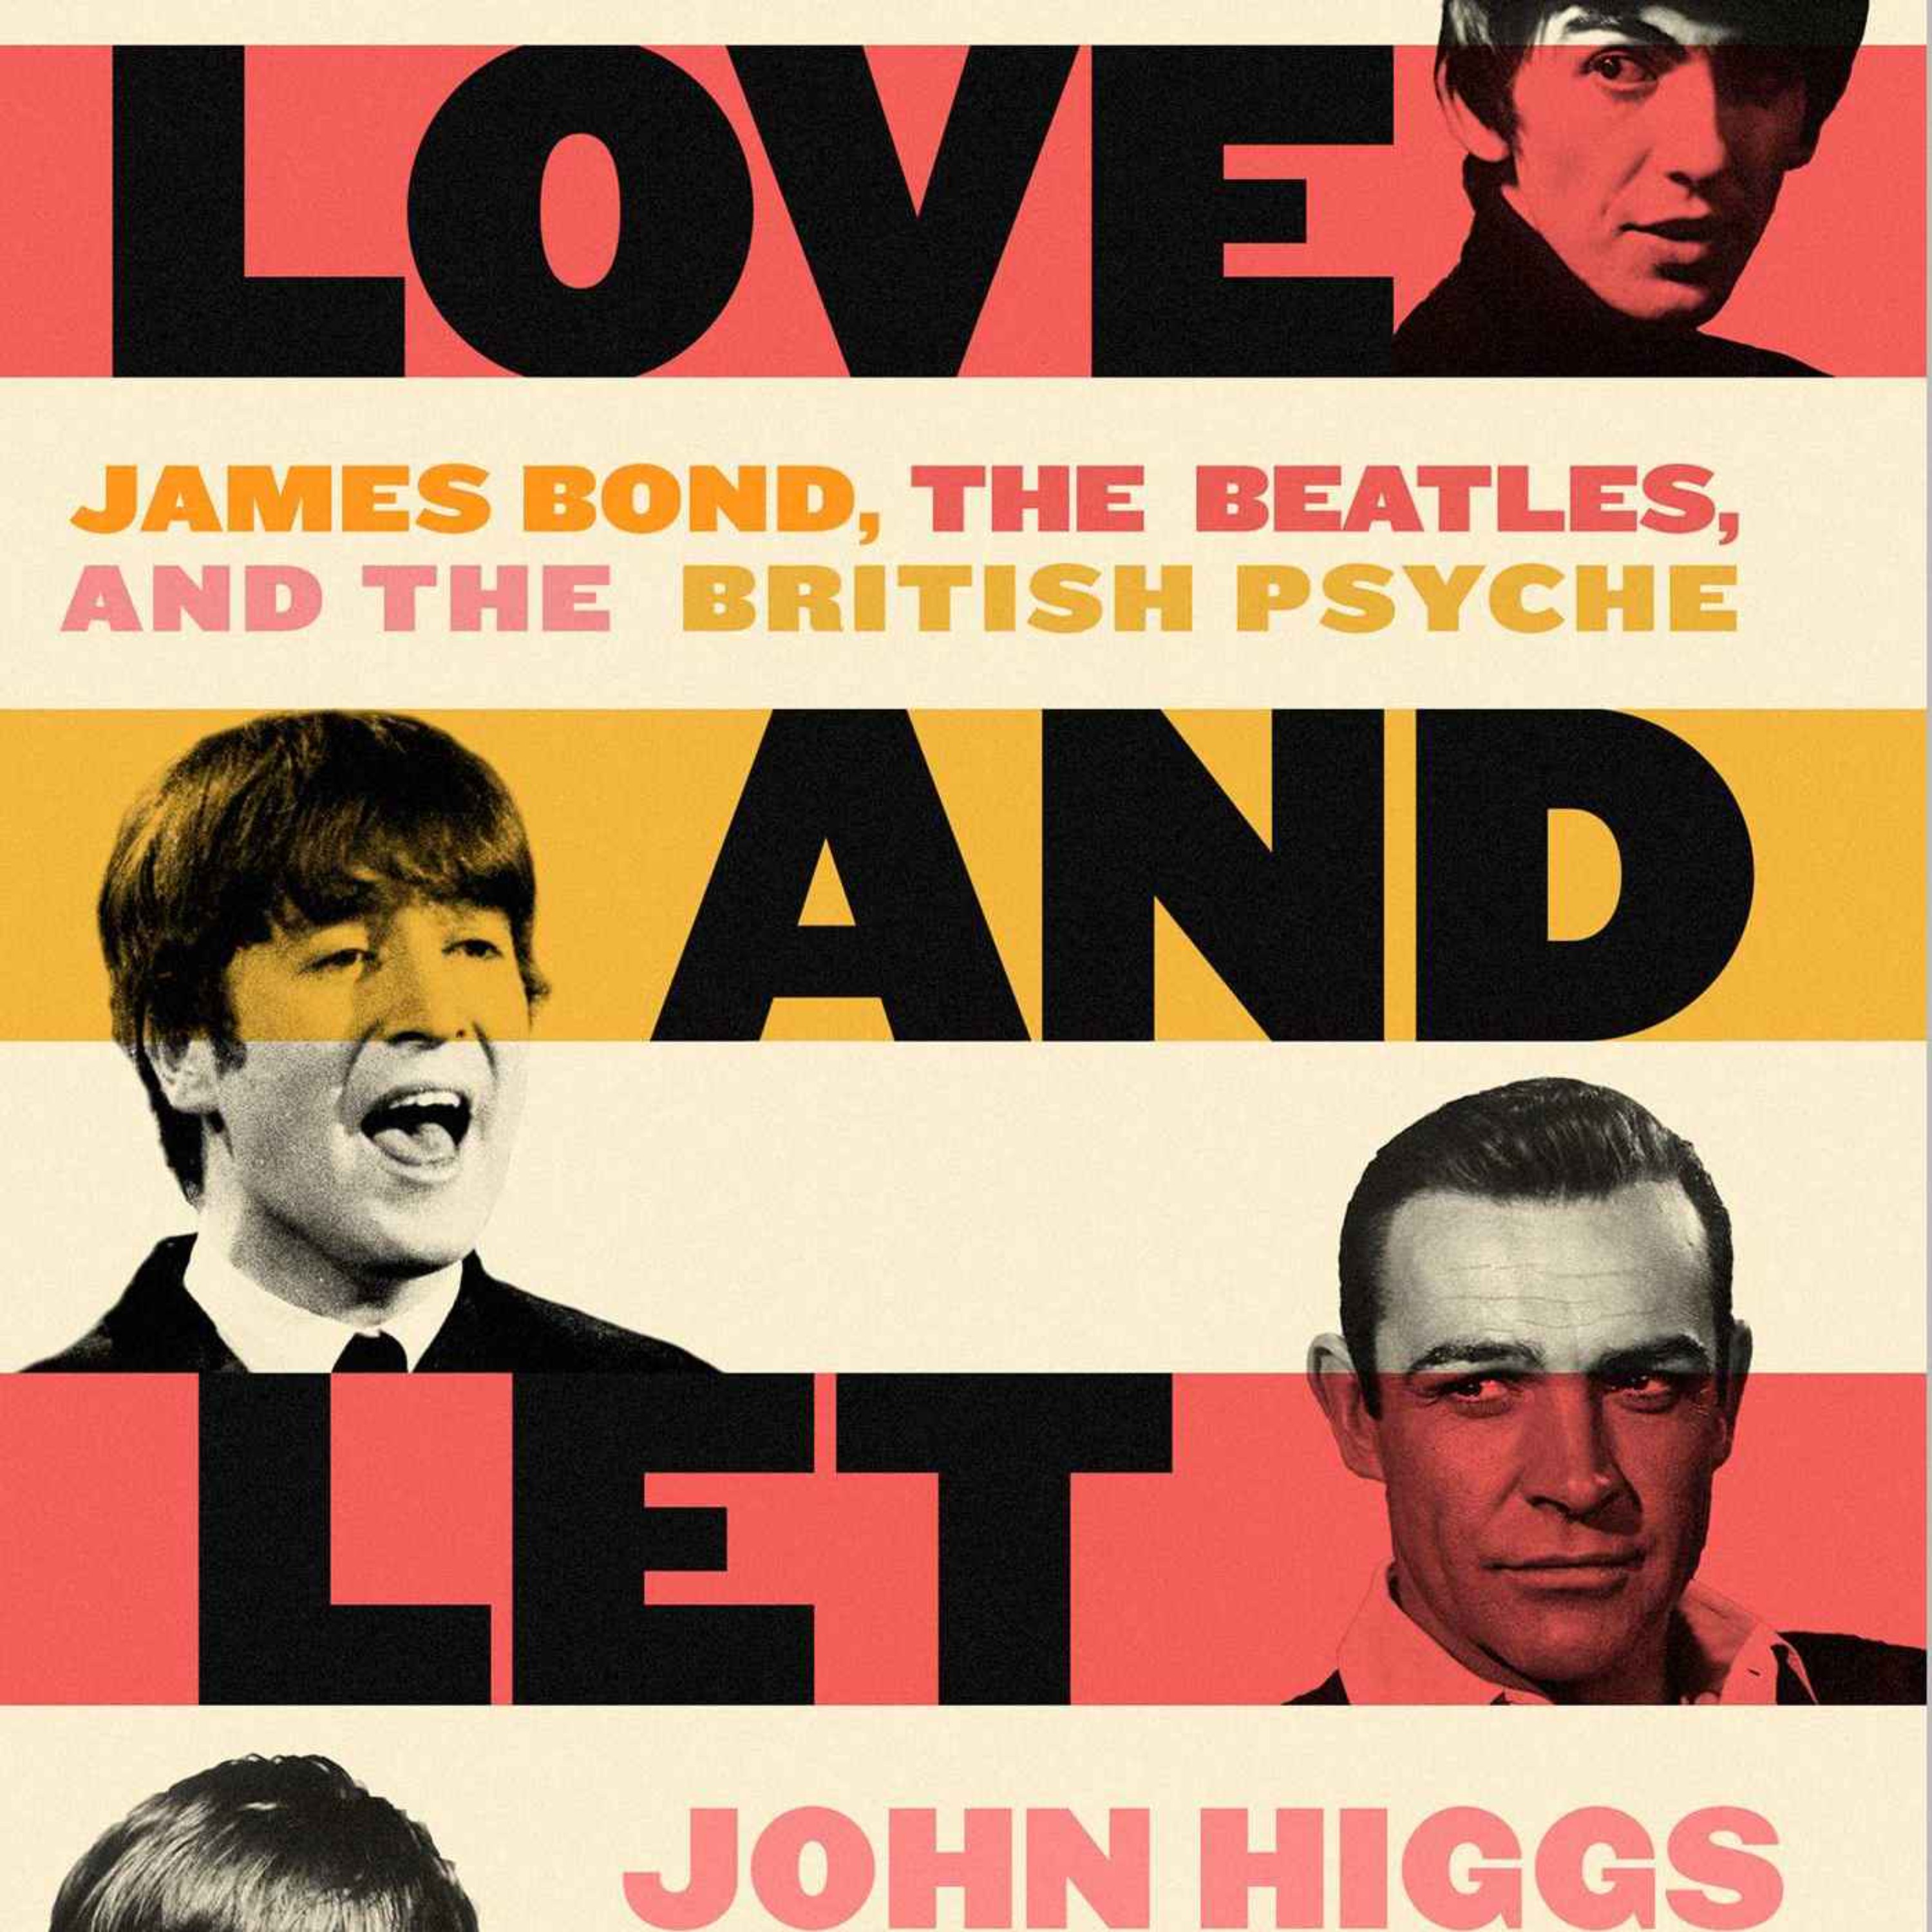 cover art for The Beatles v James Bond